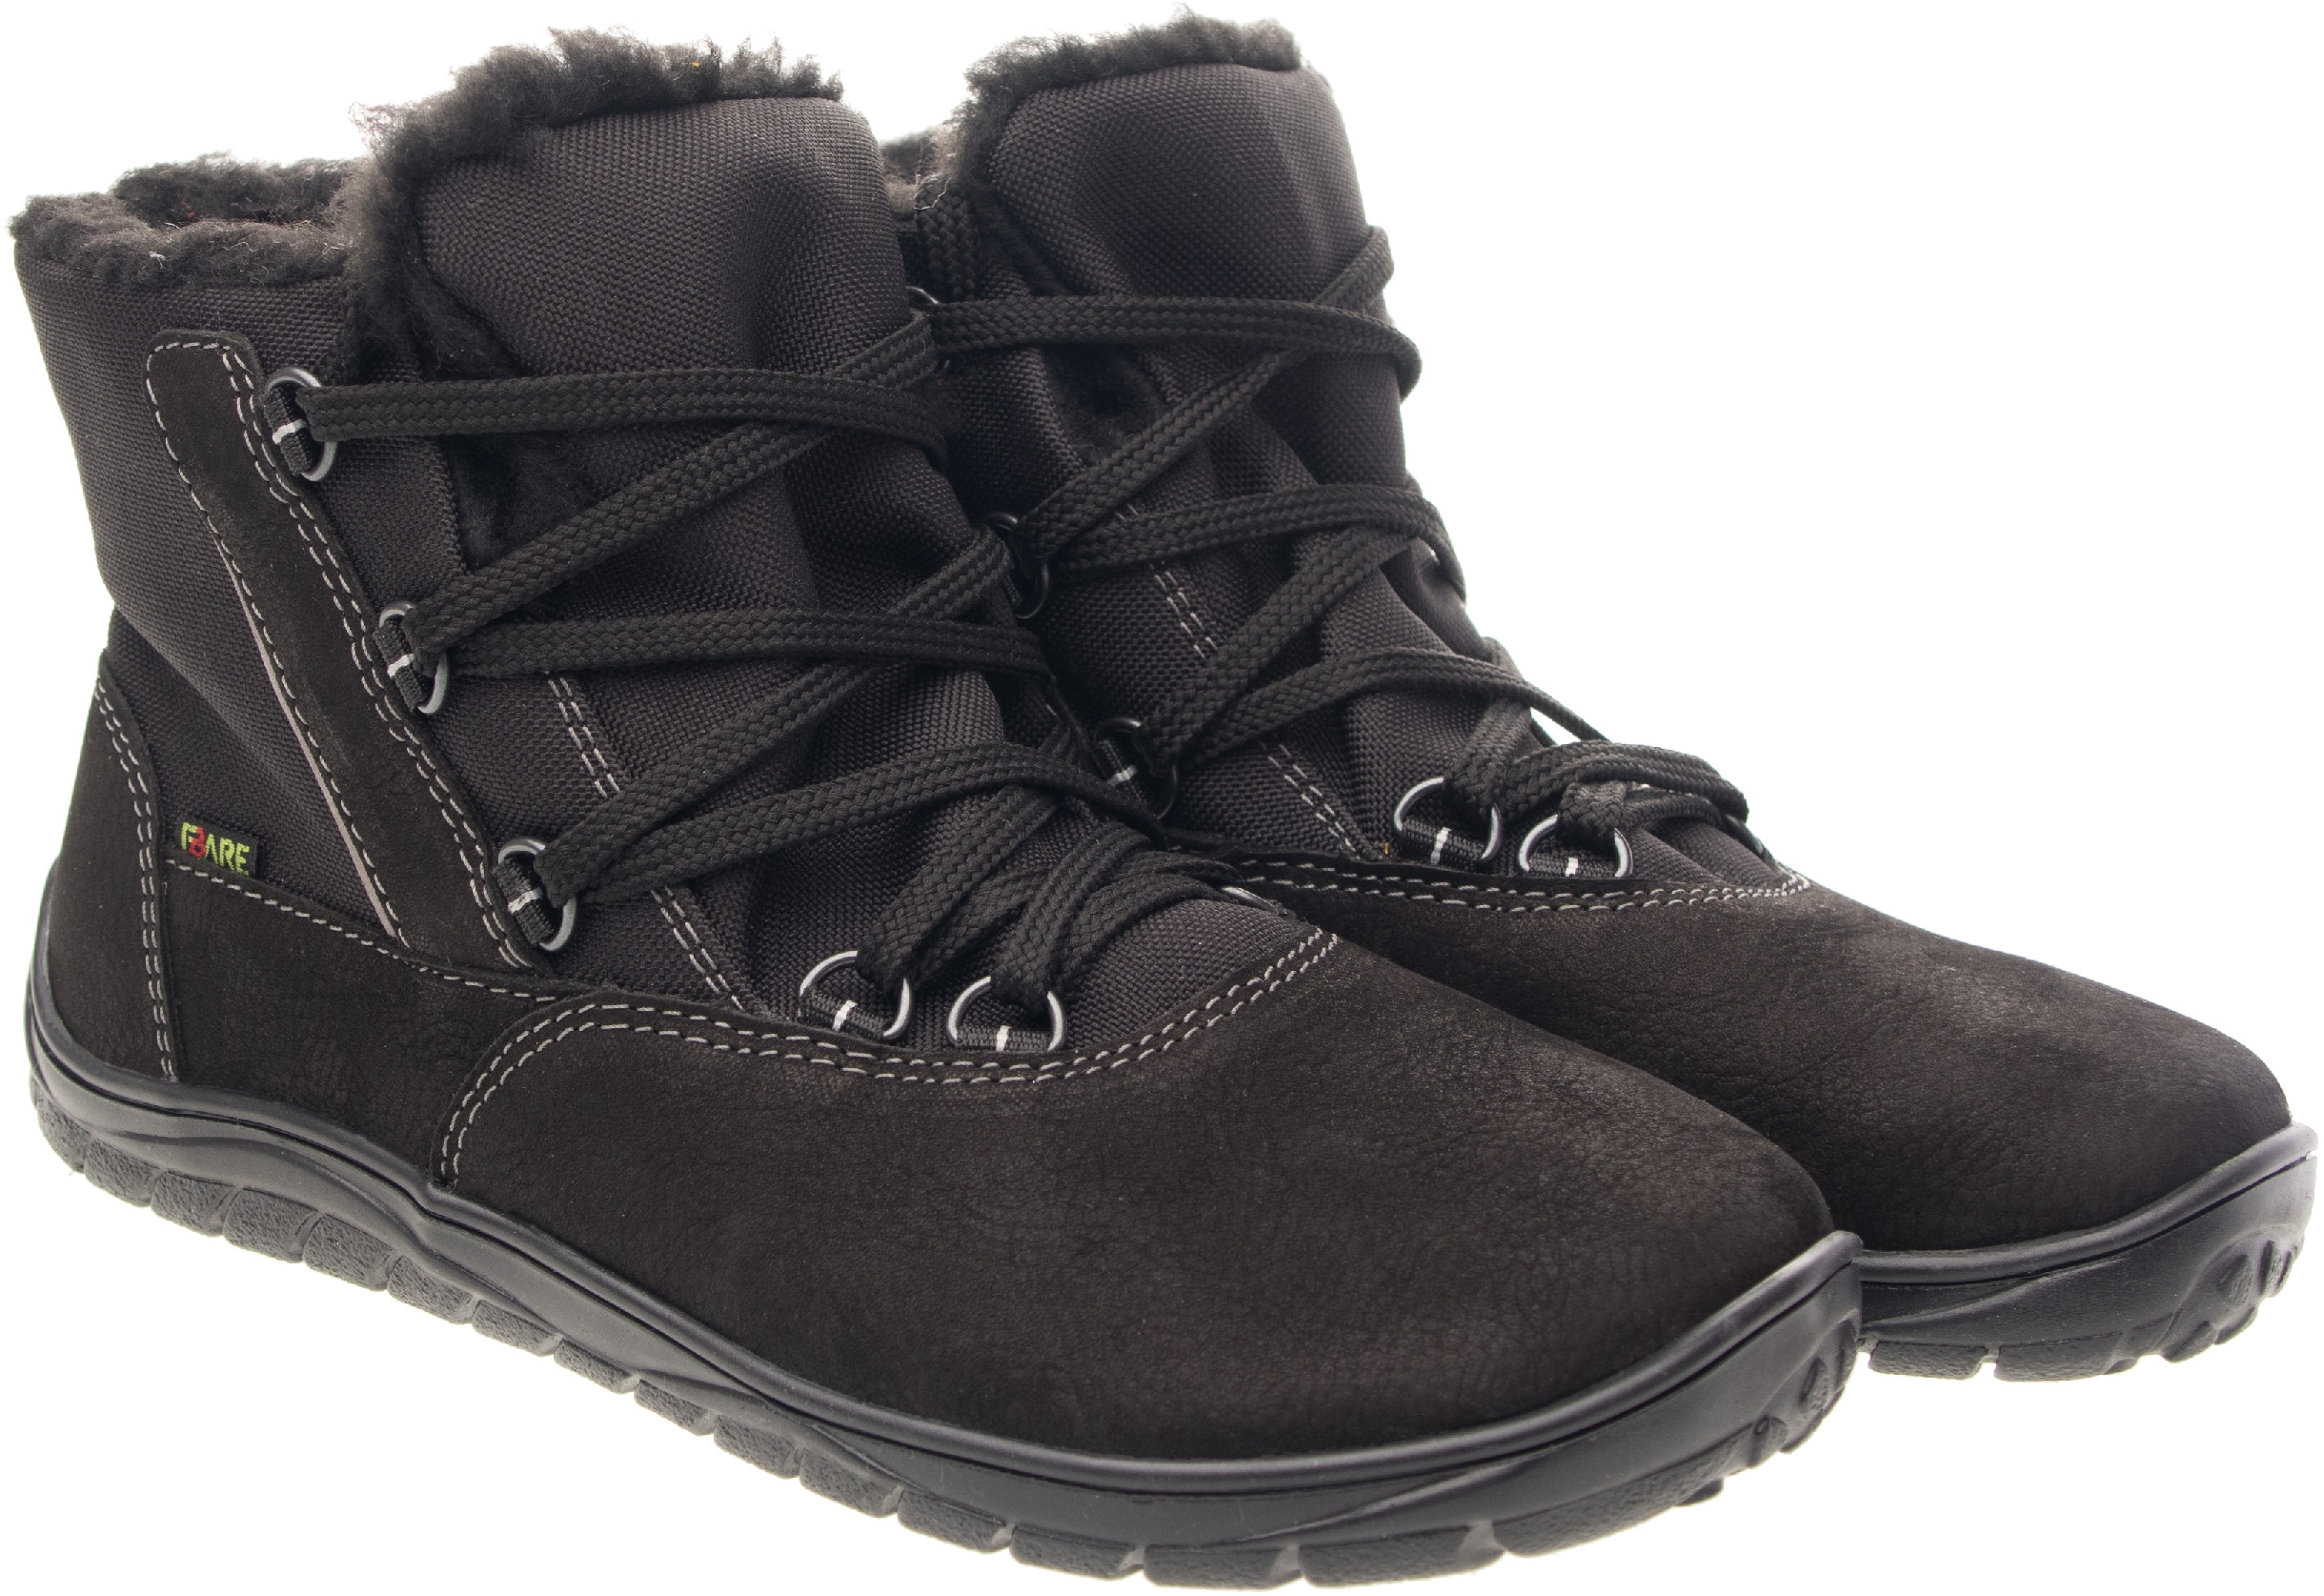 Fare Bare unisex zimní nepromokavé boty B5643112 Velikost obuvi: 33